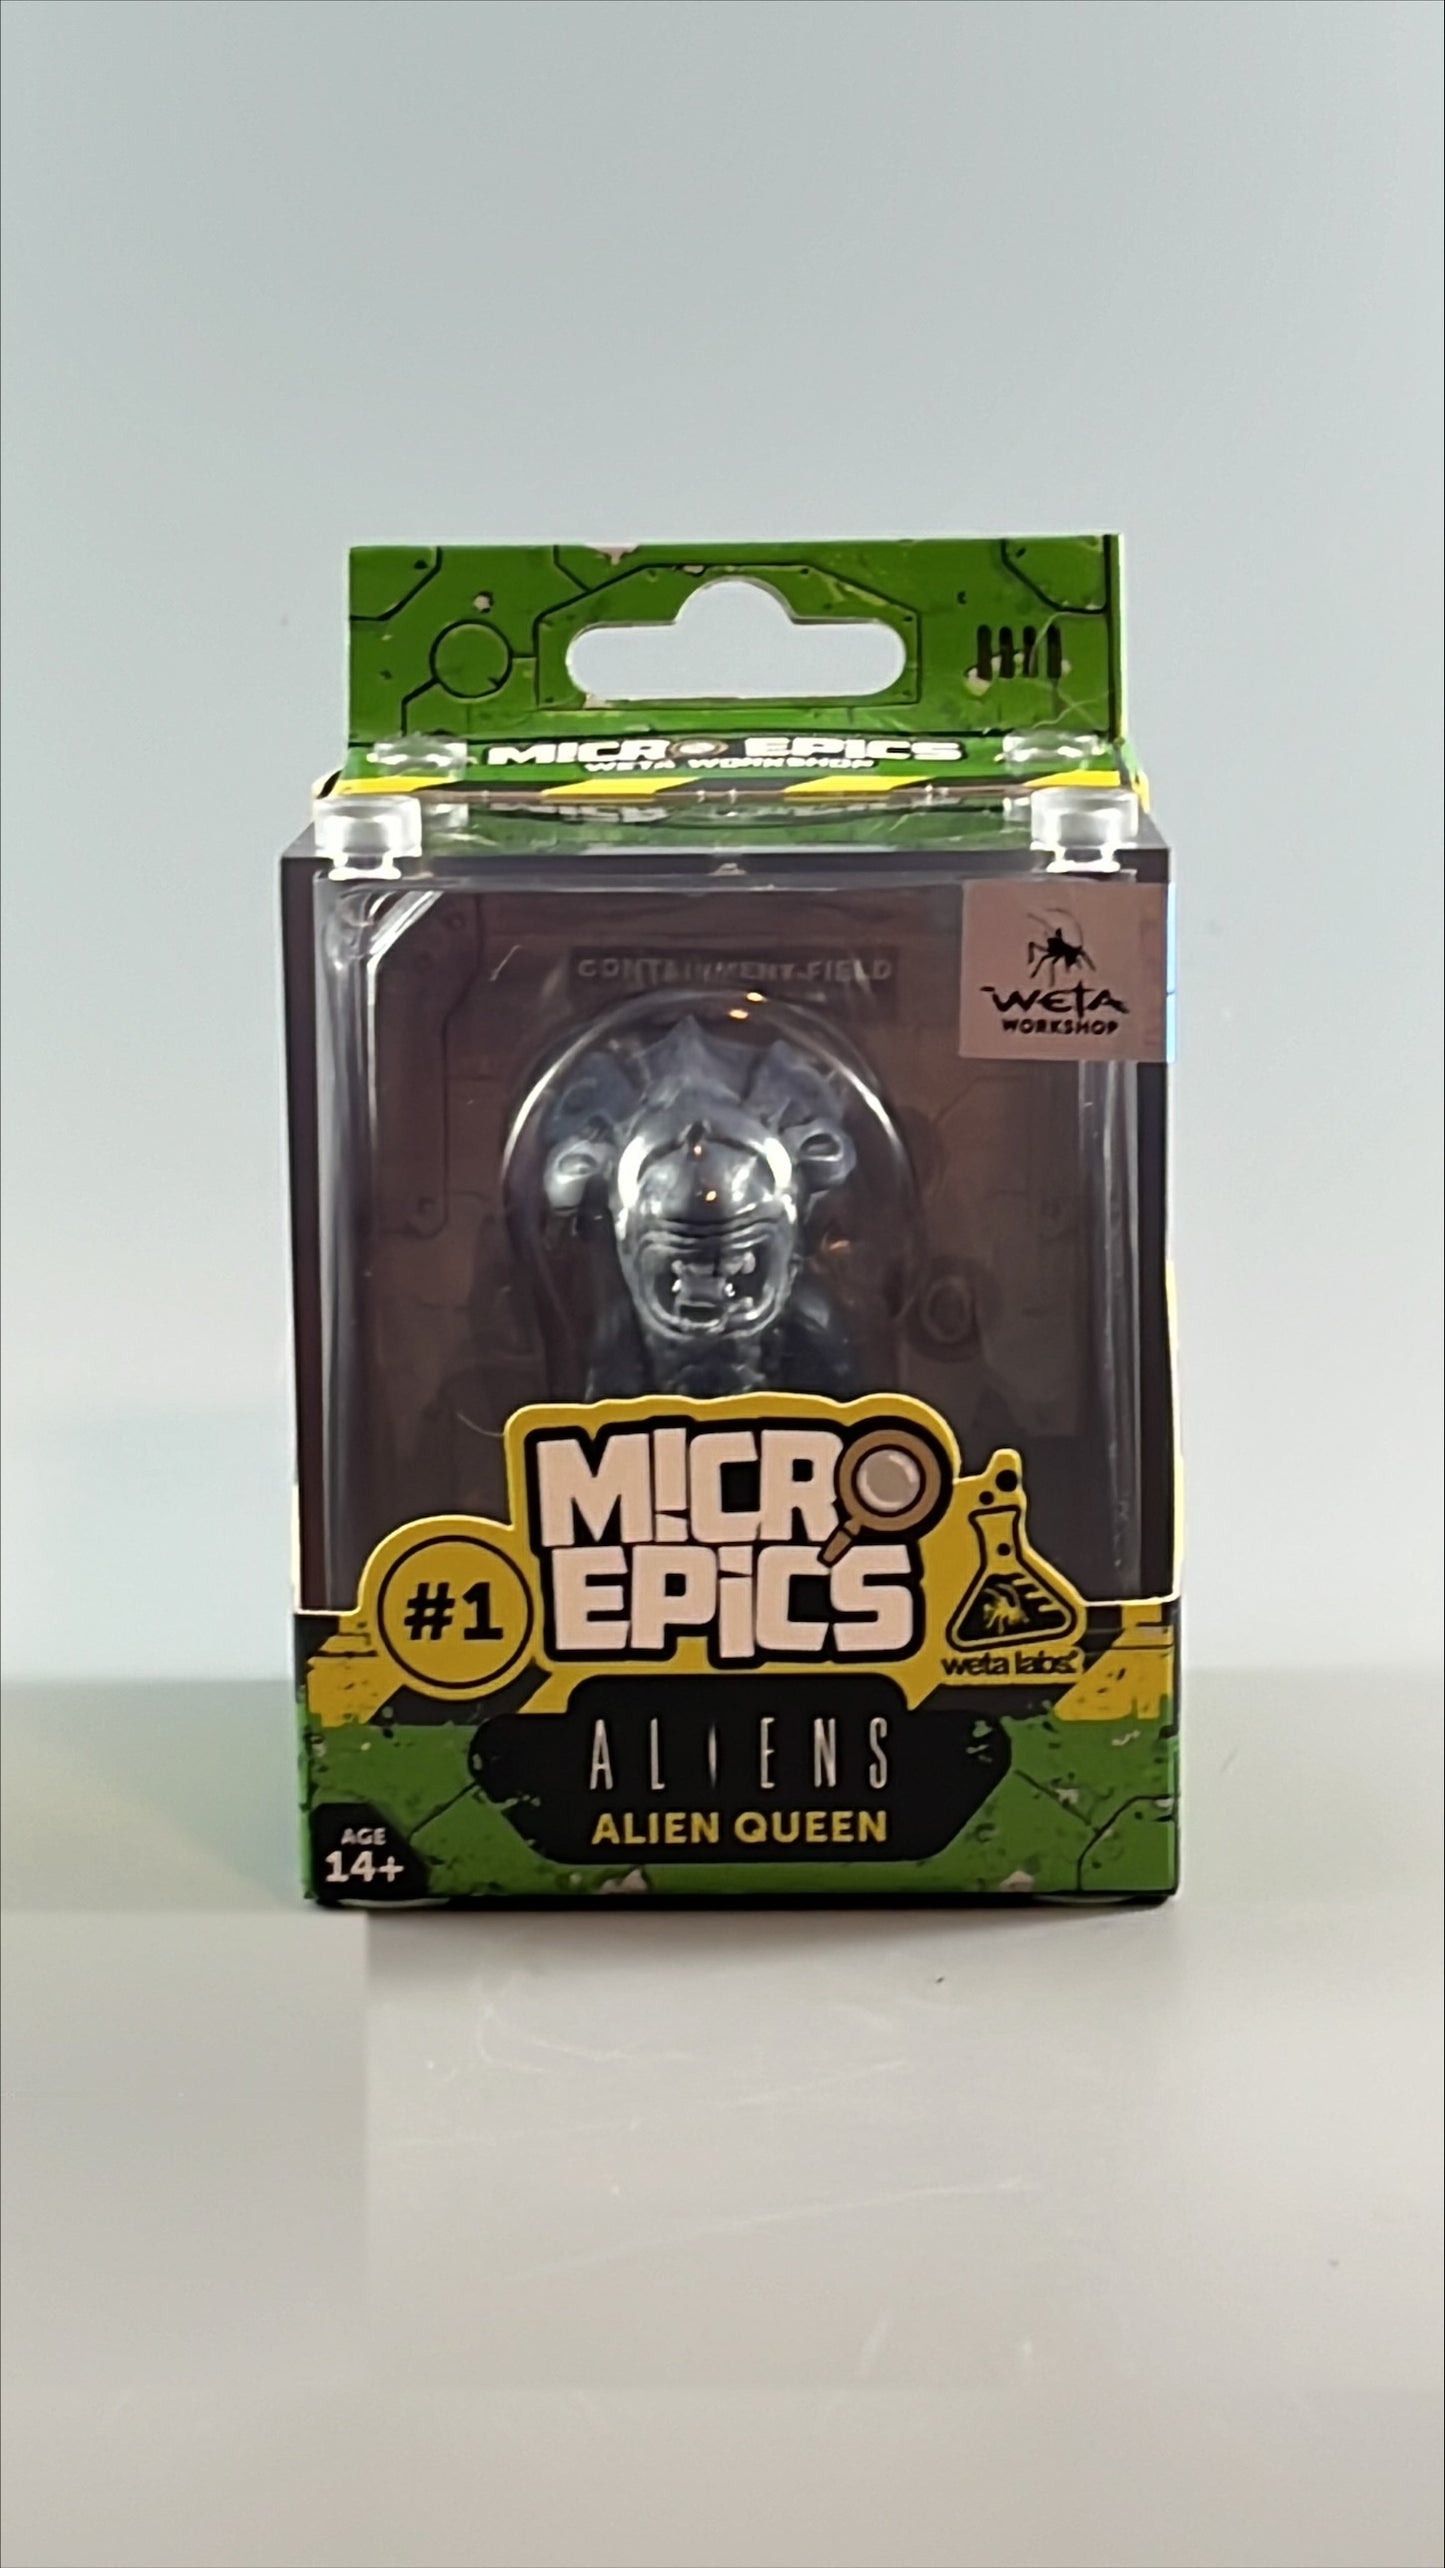 Weta Workshop Micro Epics #1 - Alien Queen